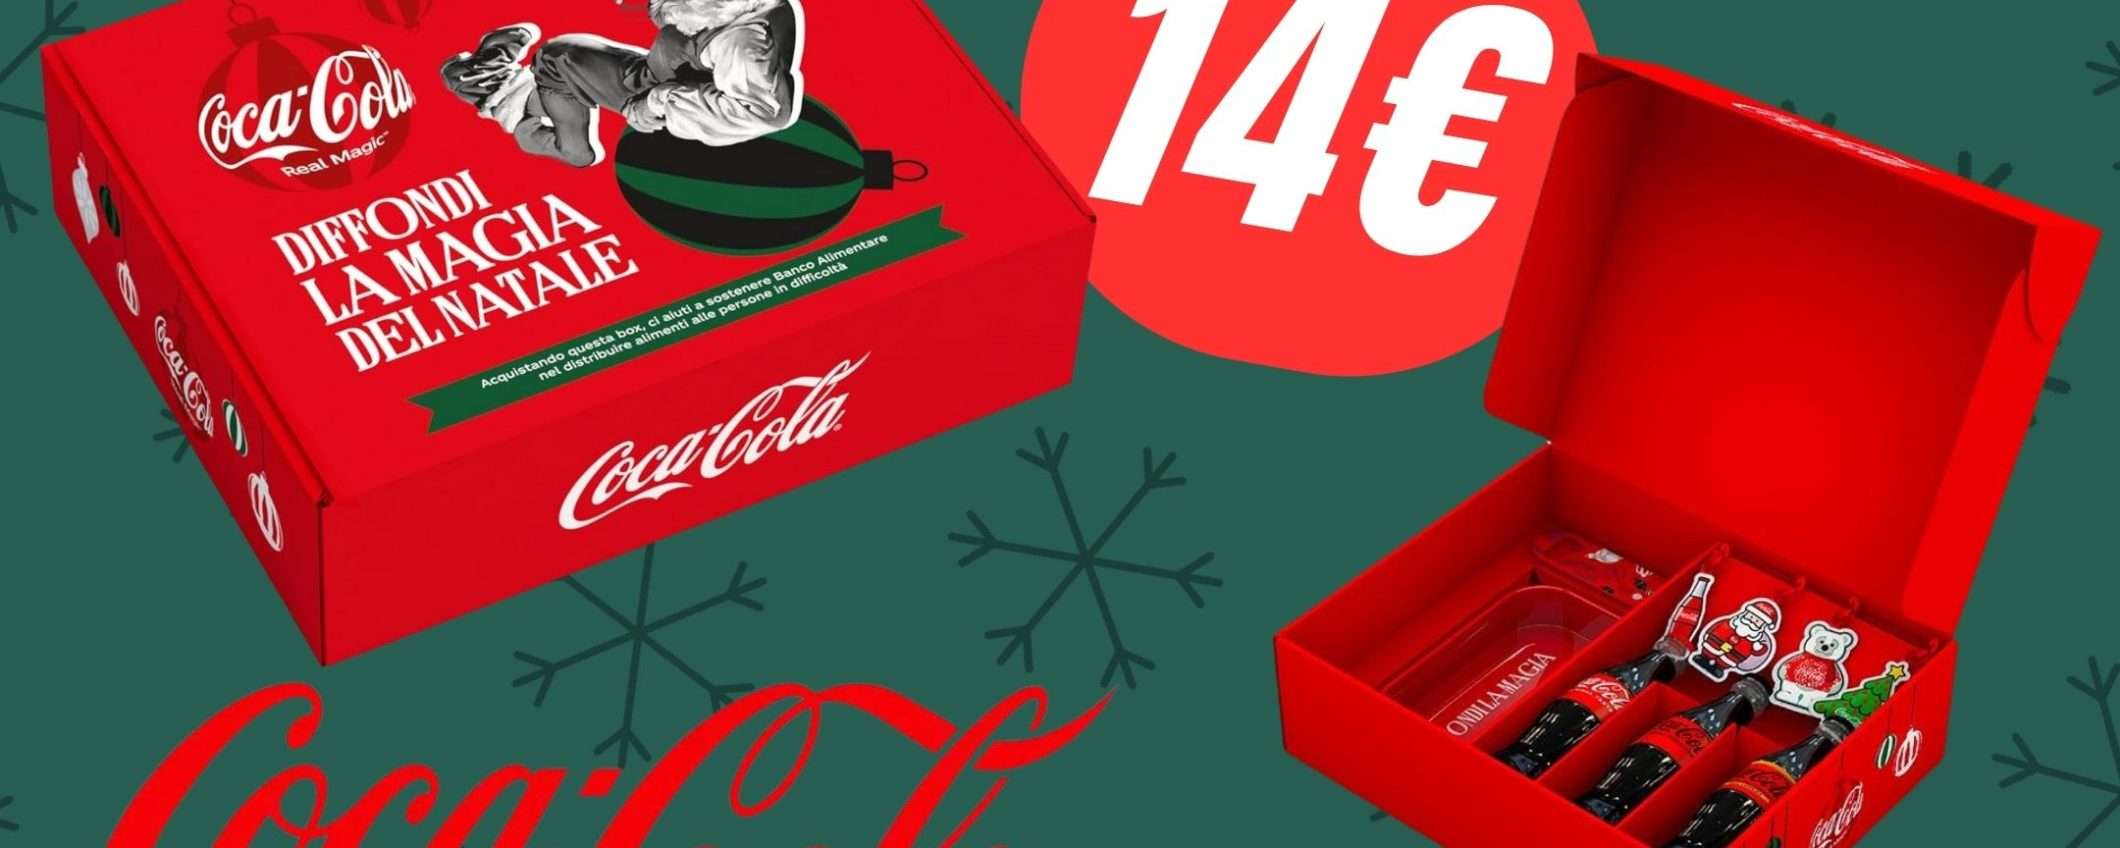 Festeggia il Natale con Coca-Cola: il Box Limited Edition è scontato su Amazon!